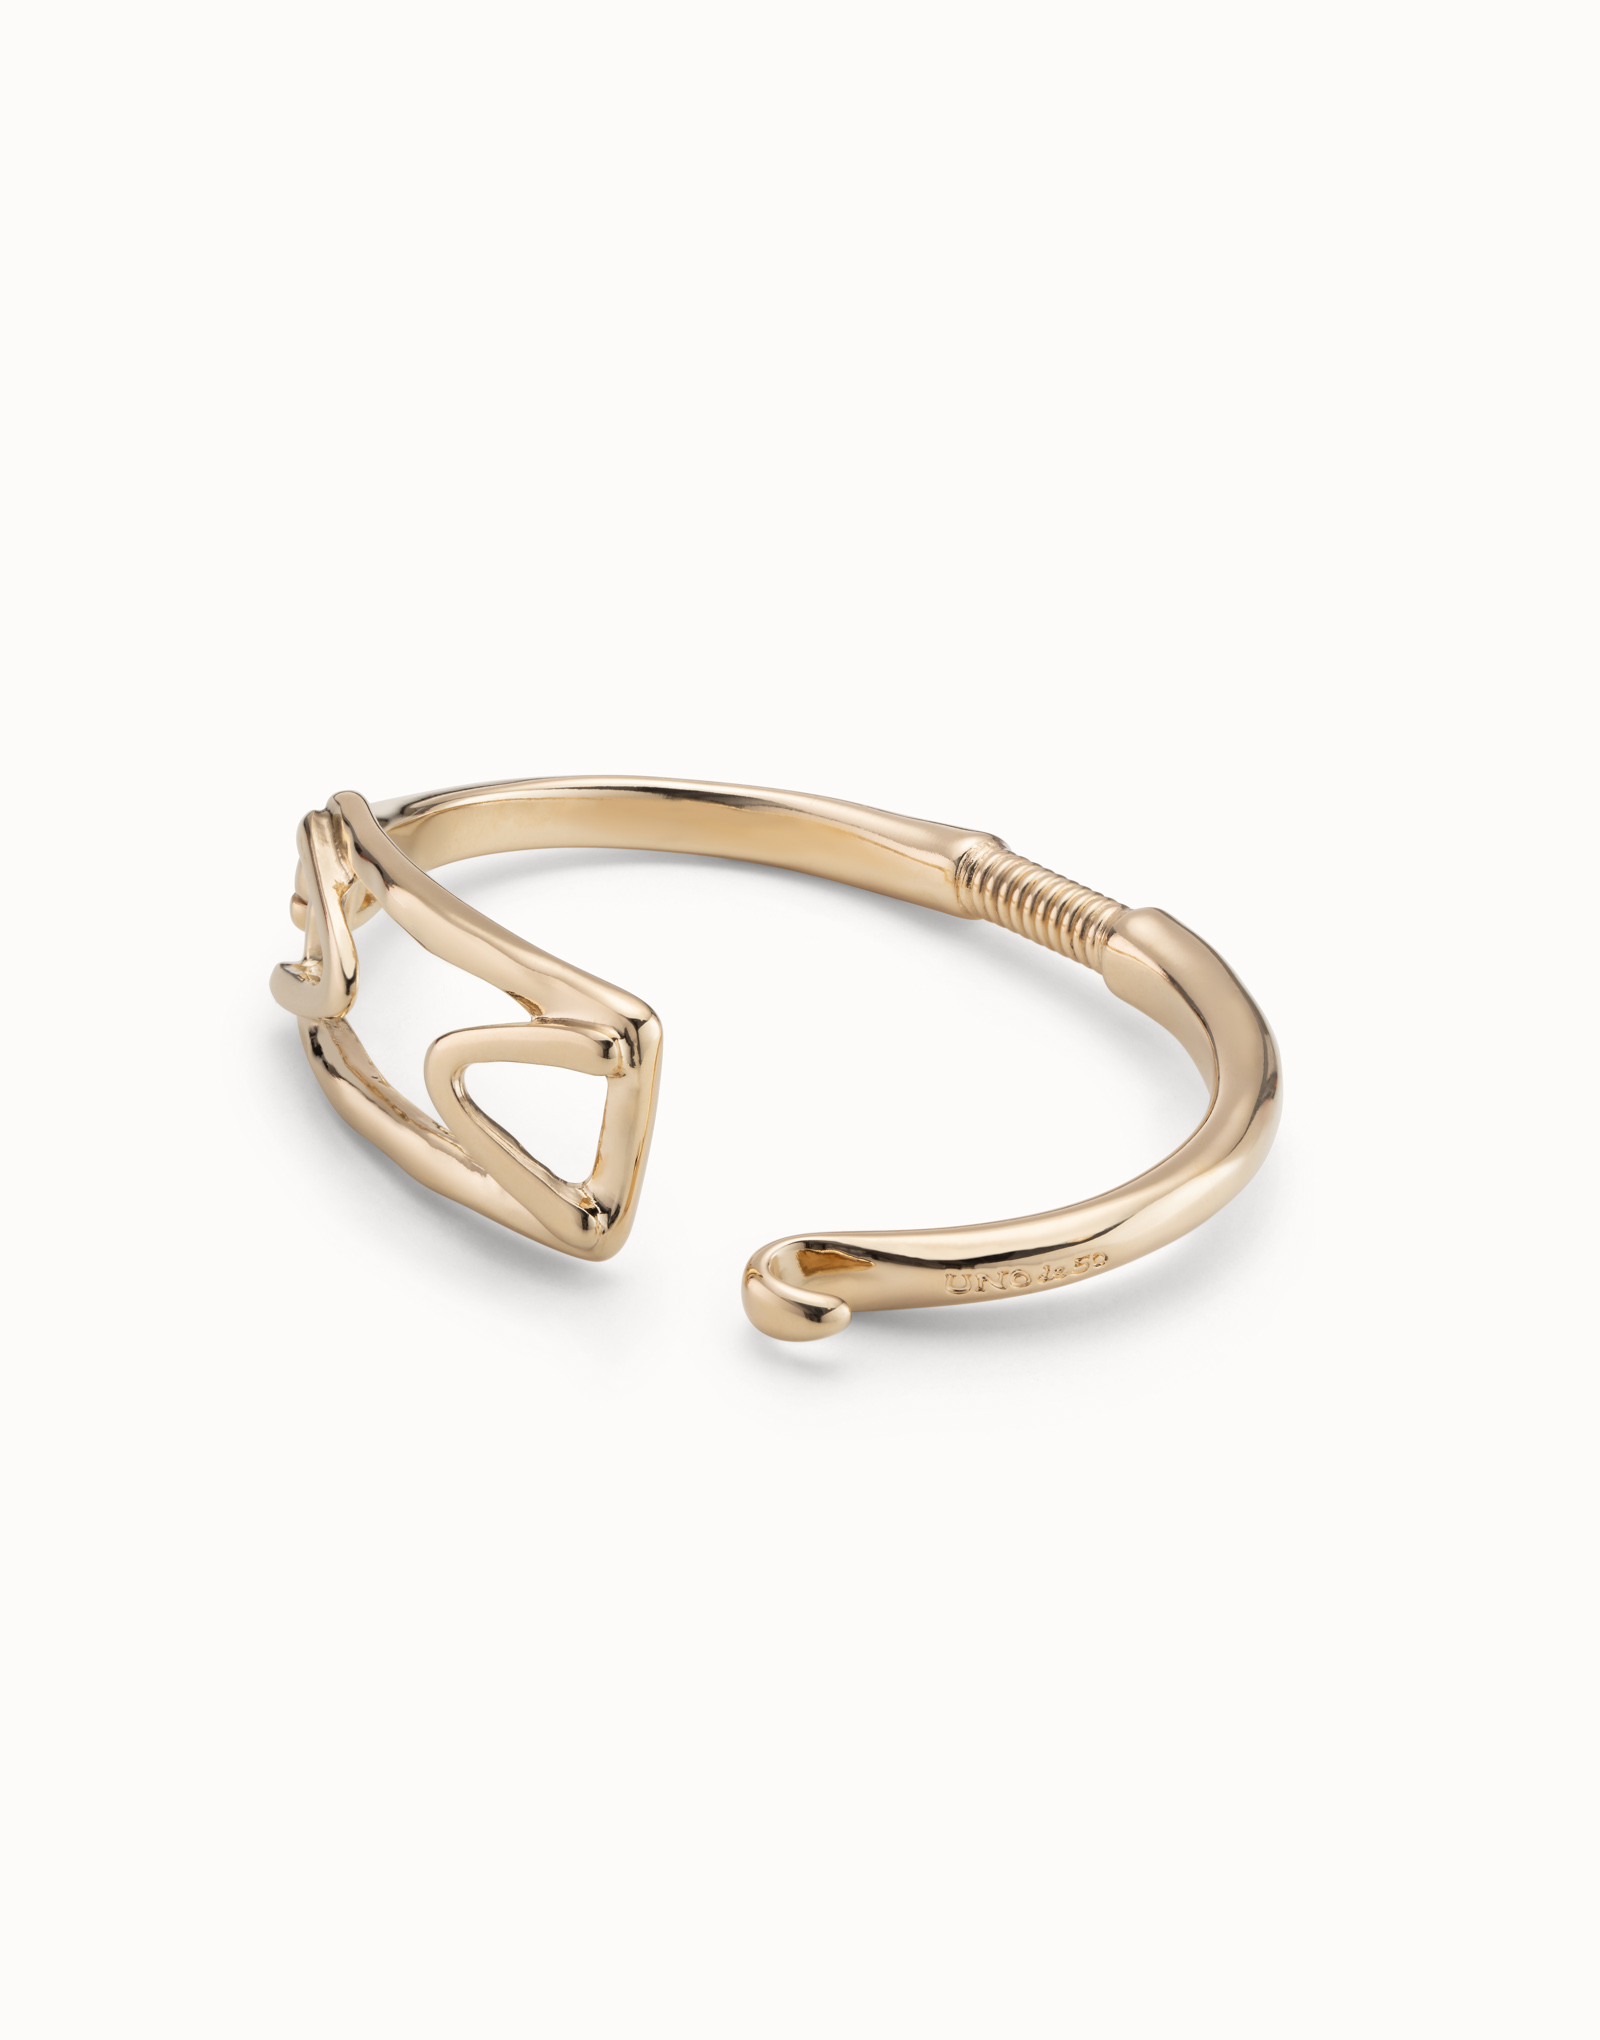 18K gold-plated rigid bracelet with rectangular central link, Golden, large image number null